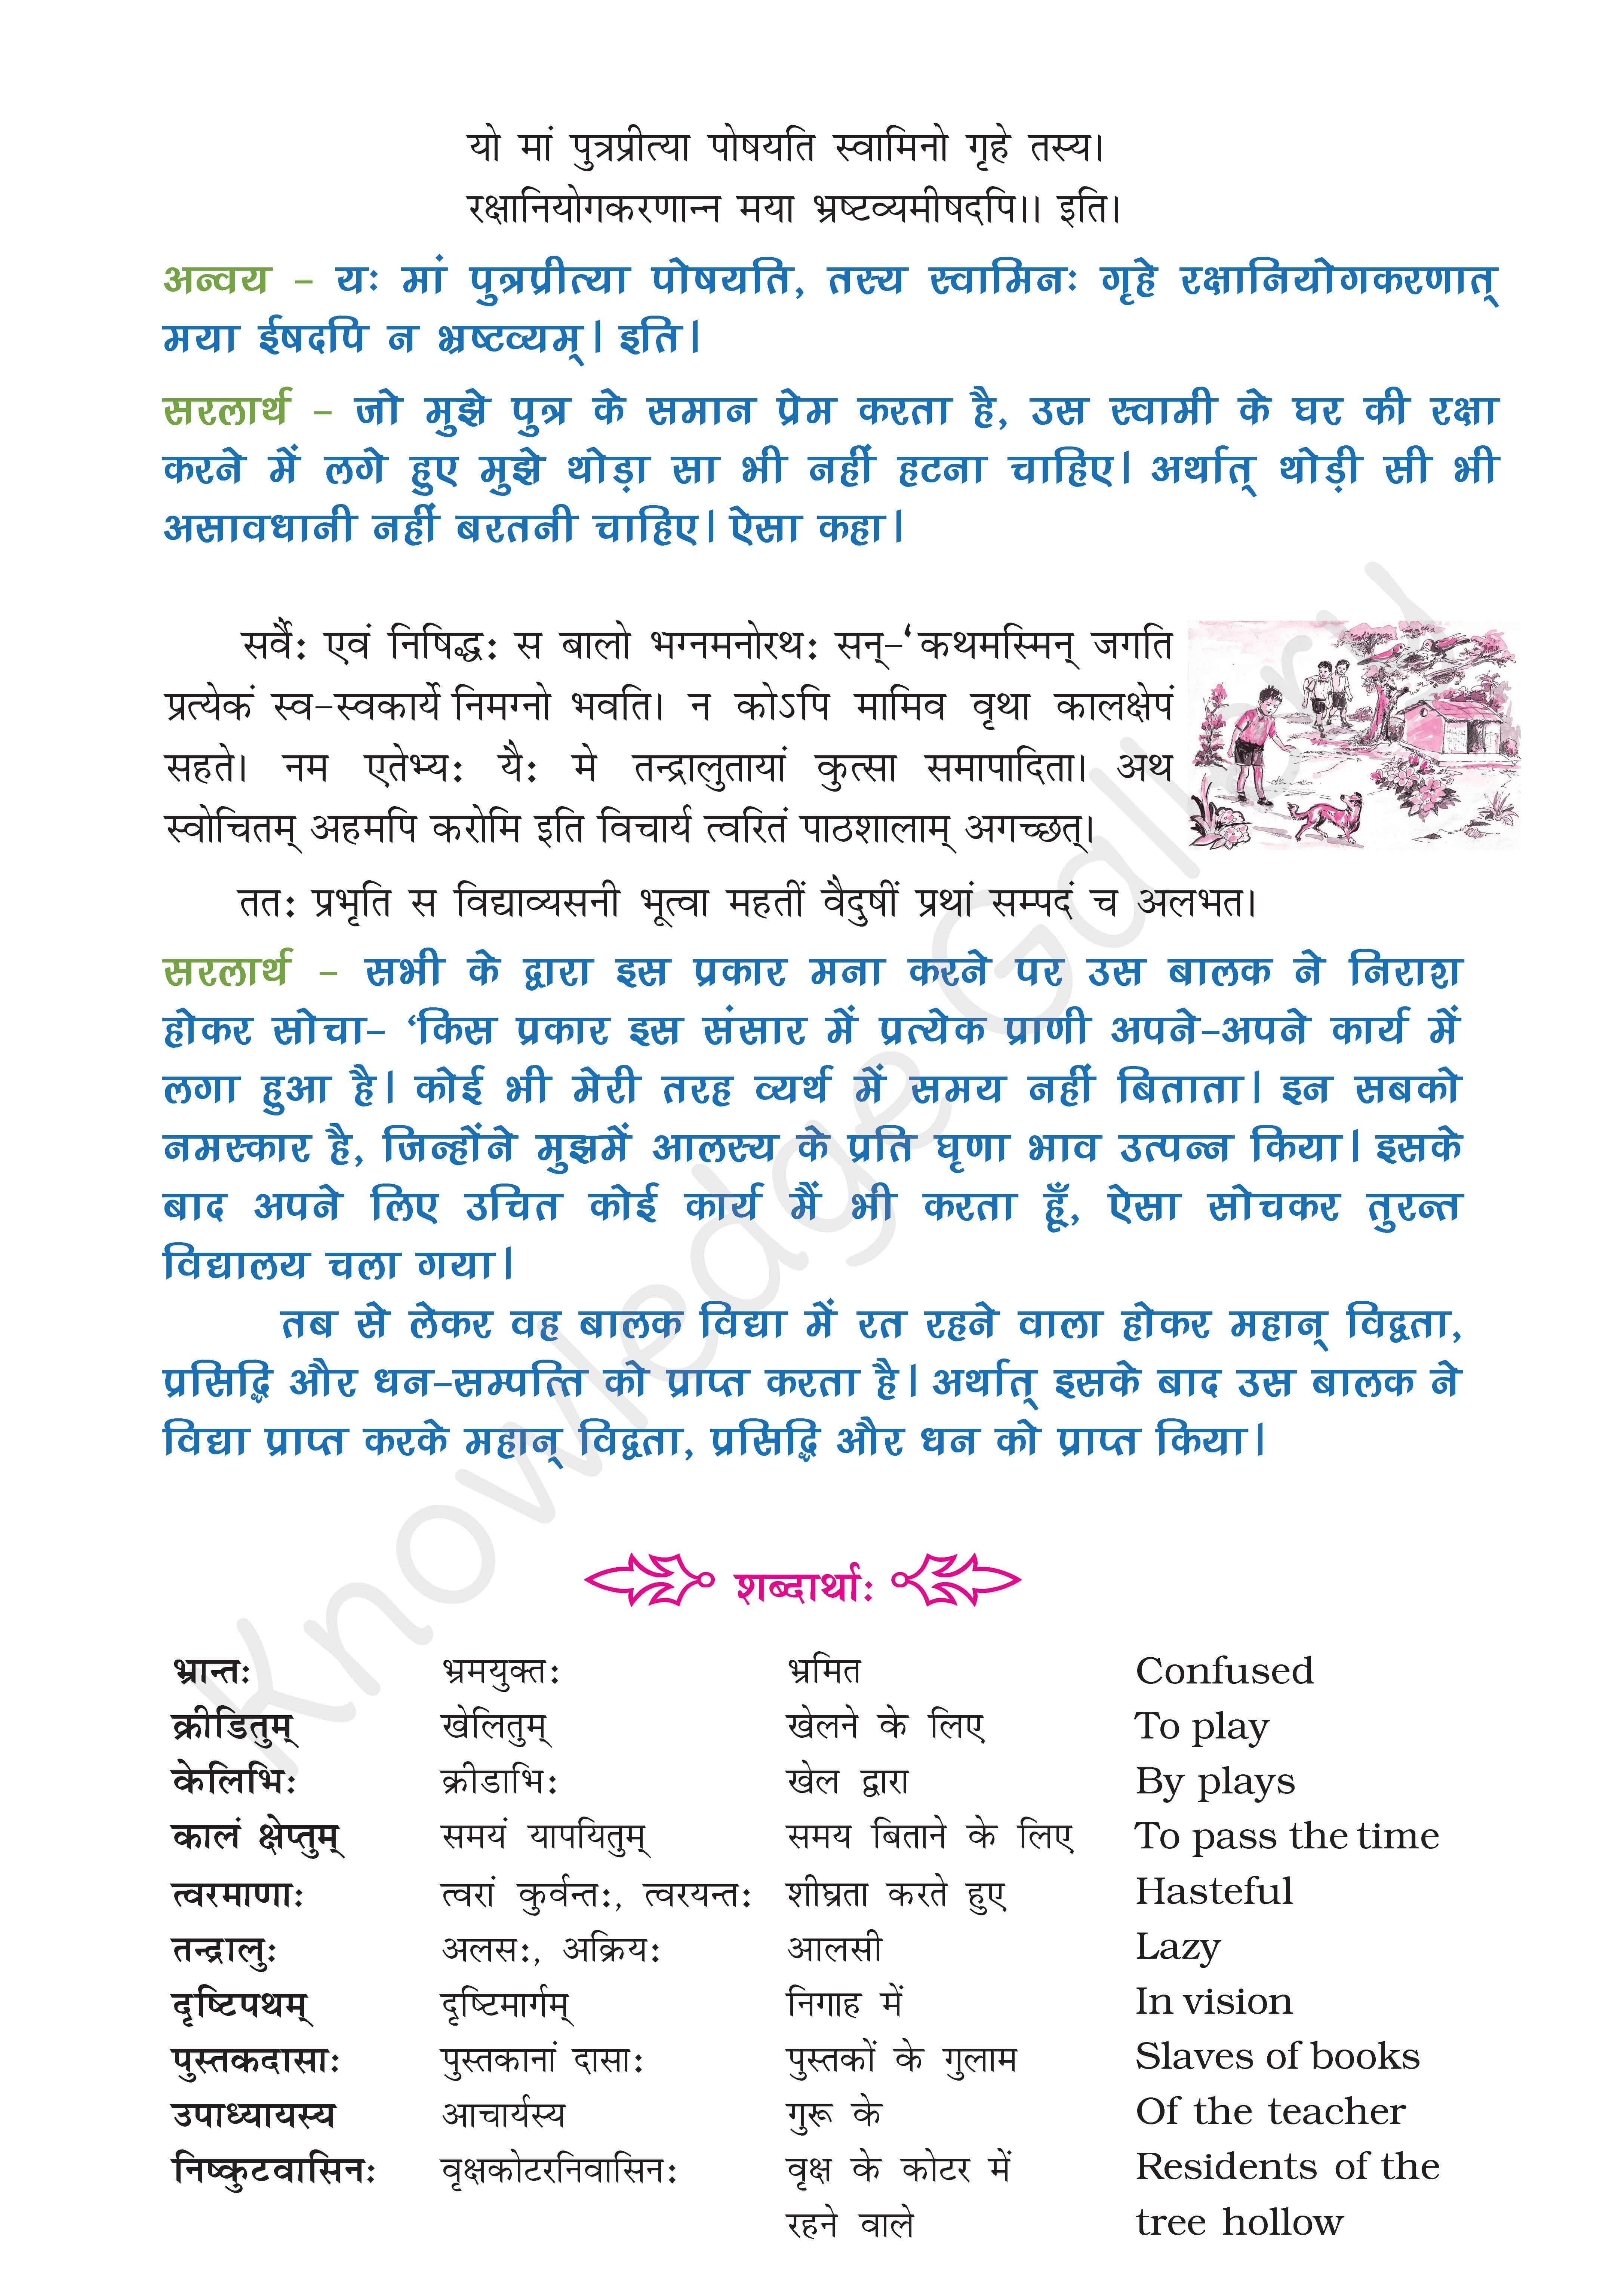 NCERT Solution For Class 9 Sanskrit Chapter 5 part 3